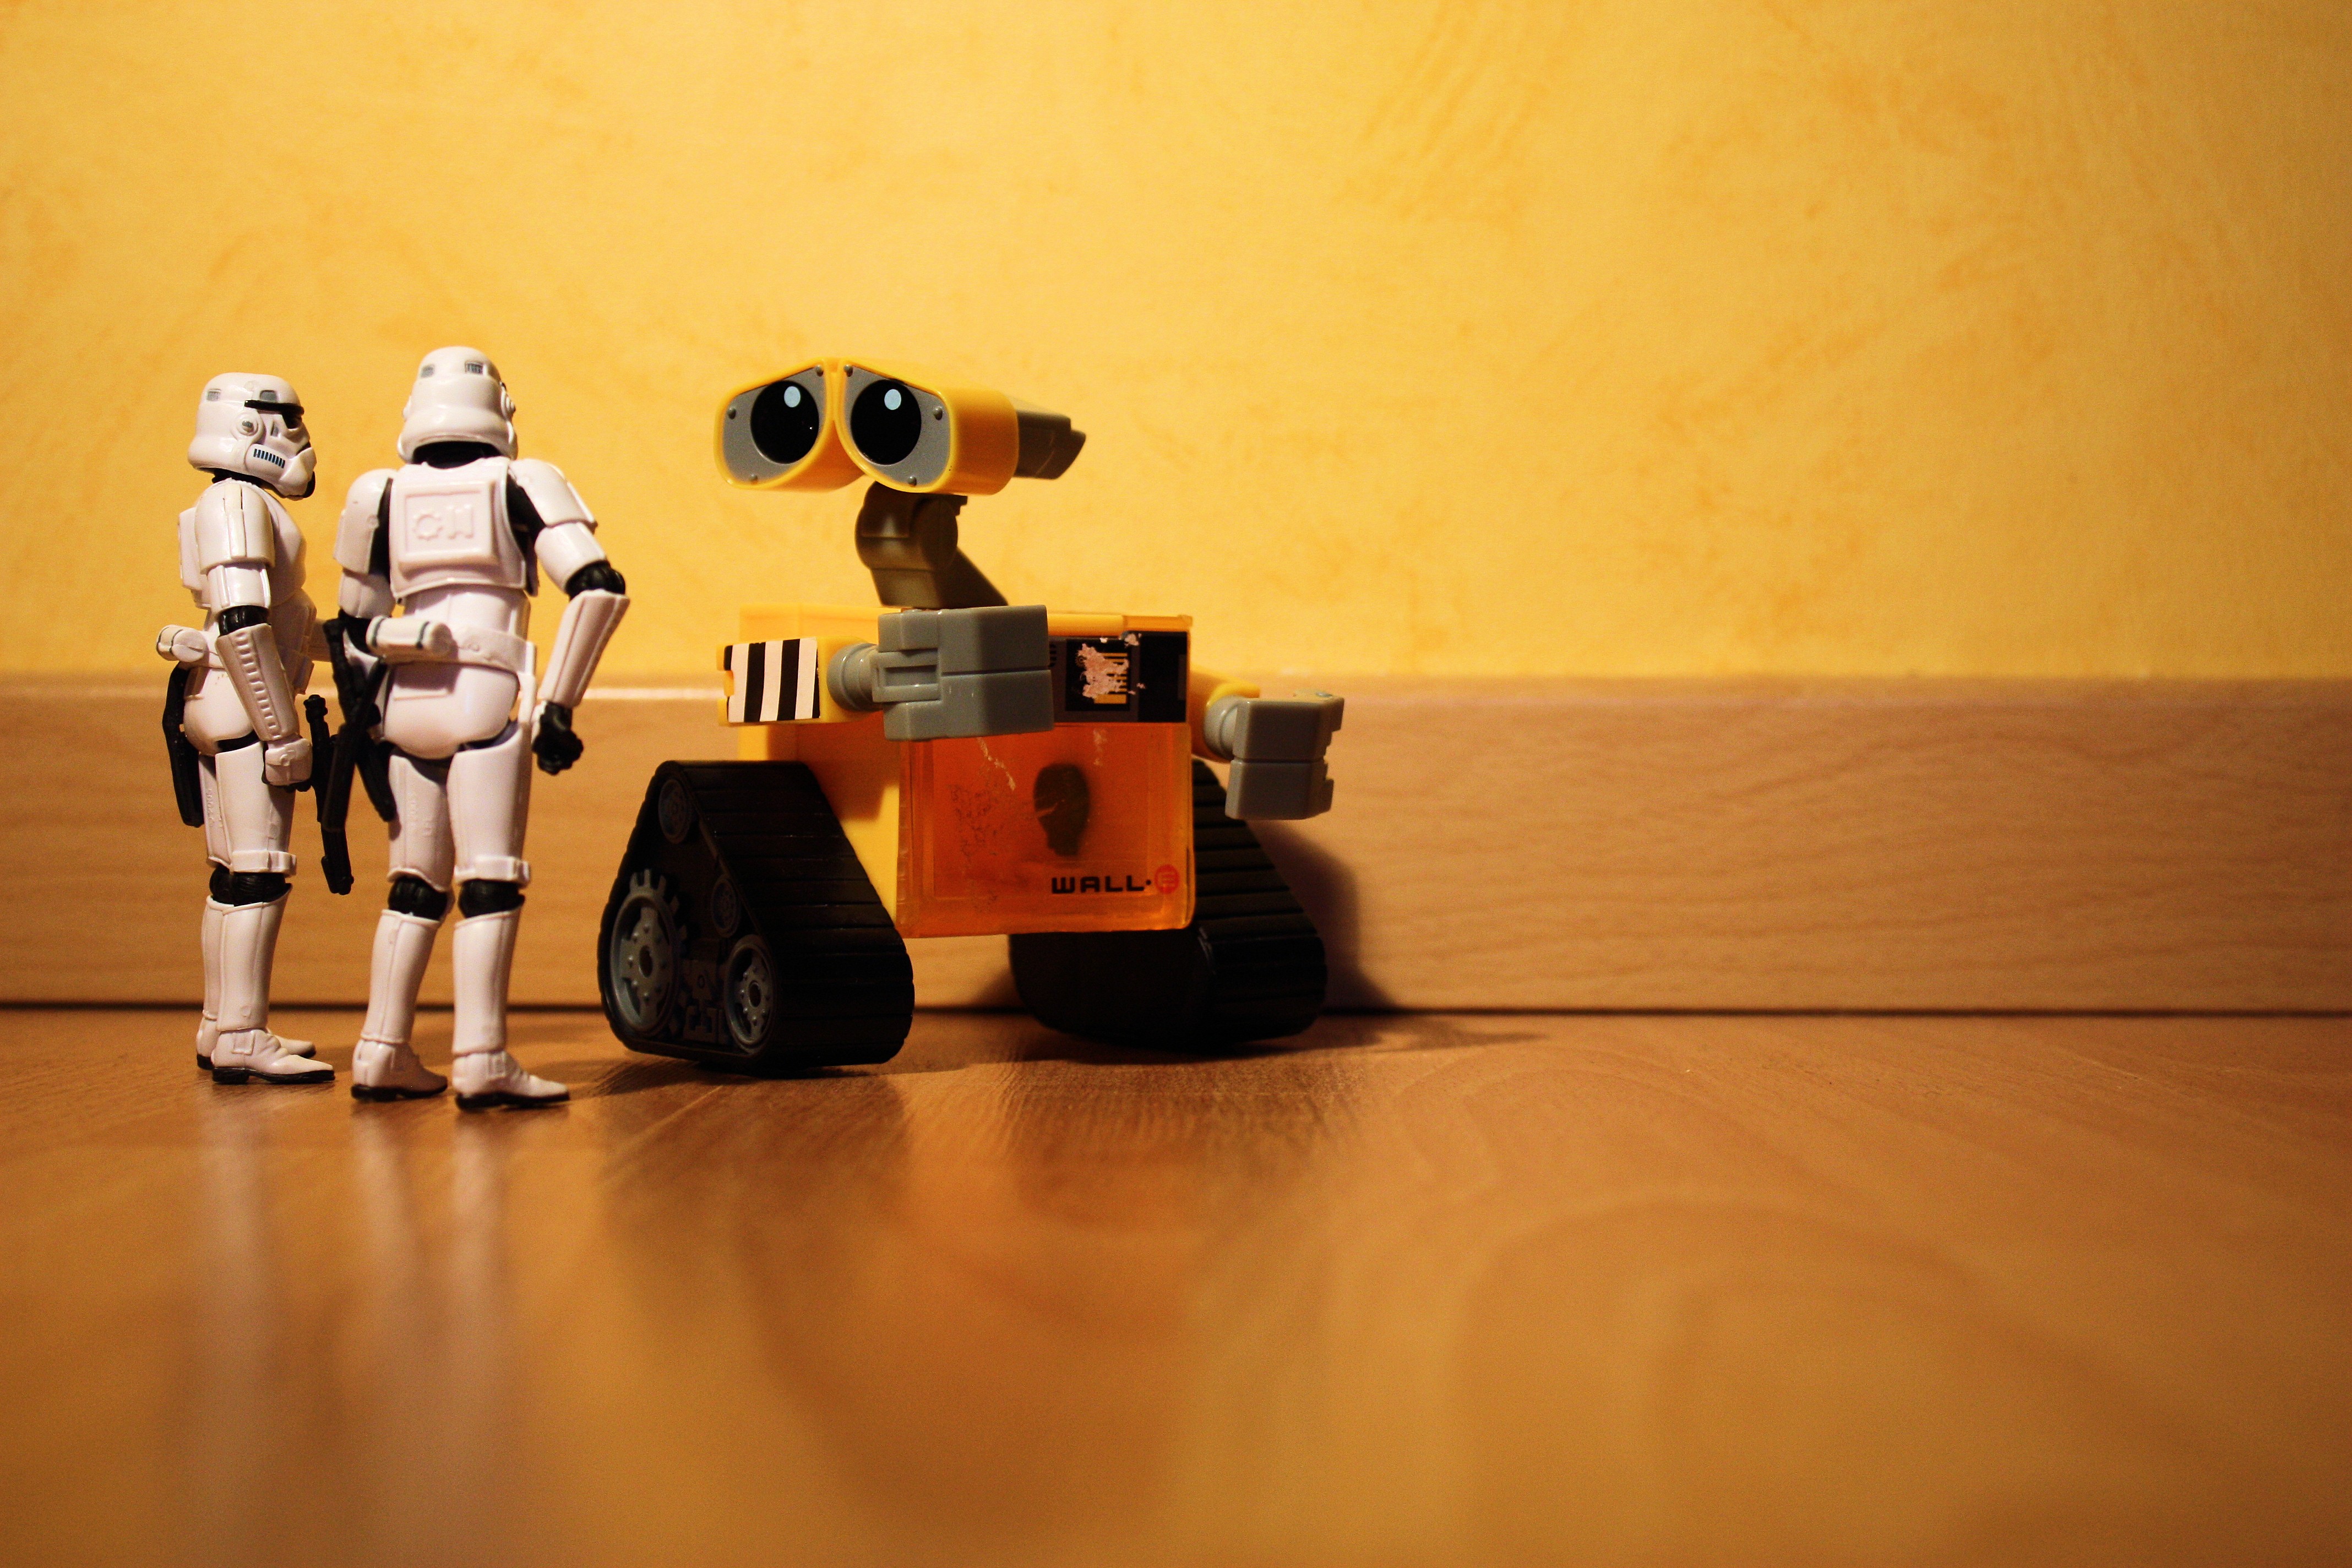 Звездные Войны, роботы, штурмовики, Wall-E, миниатюрная, статуэтки, фигурки, куклы - обои на рабочий стол